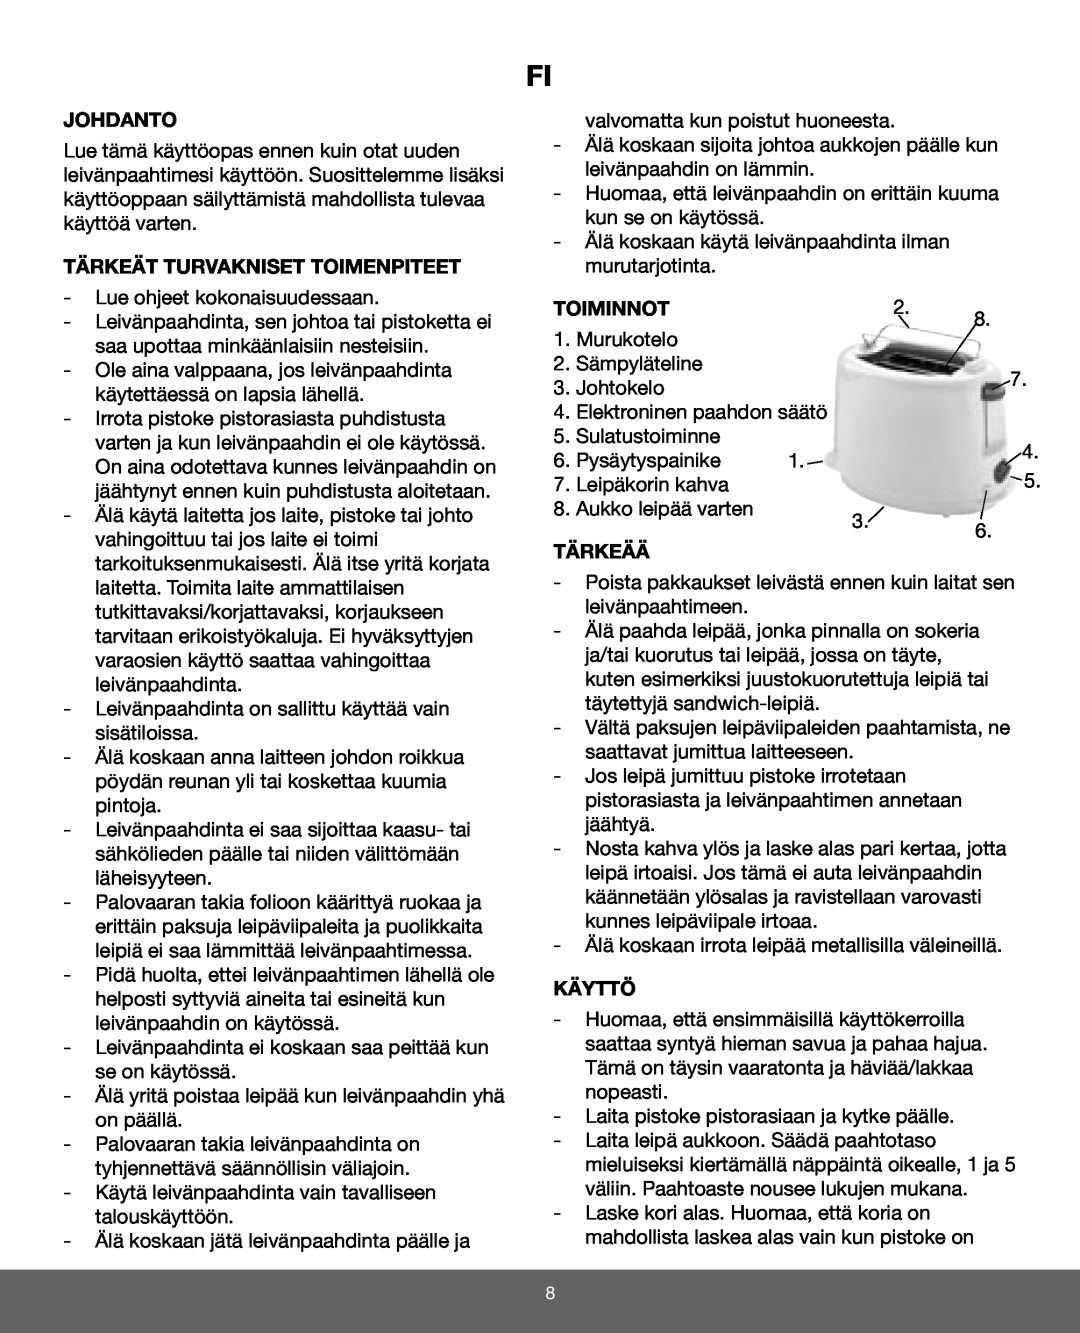 Melissa 643-024 manual Johdanto, Tärkeät Turvakniset Toimenpiteet, Toiminnot, Tärkeää, Käyttö 